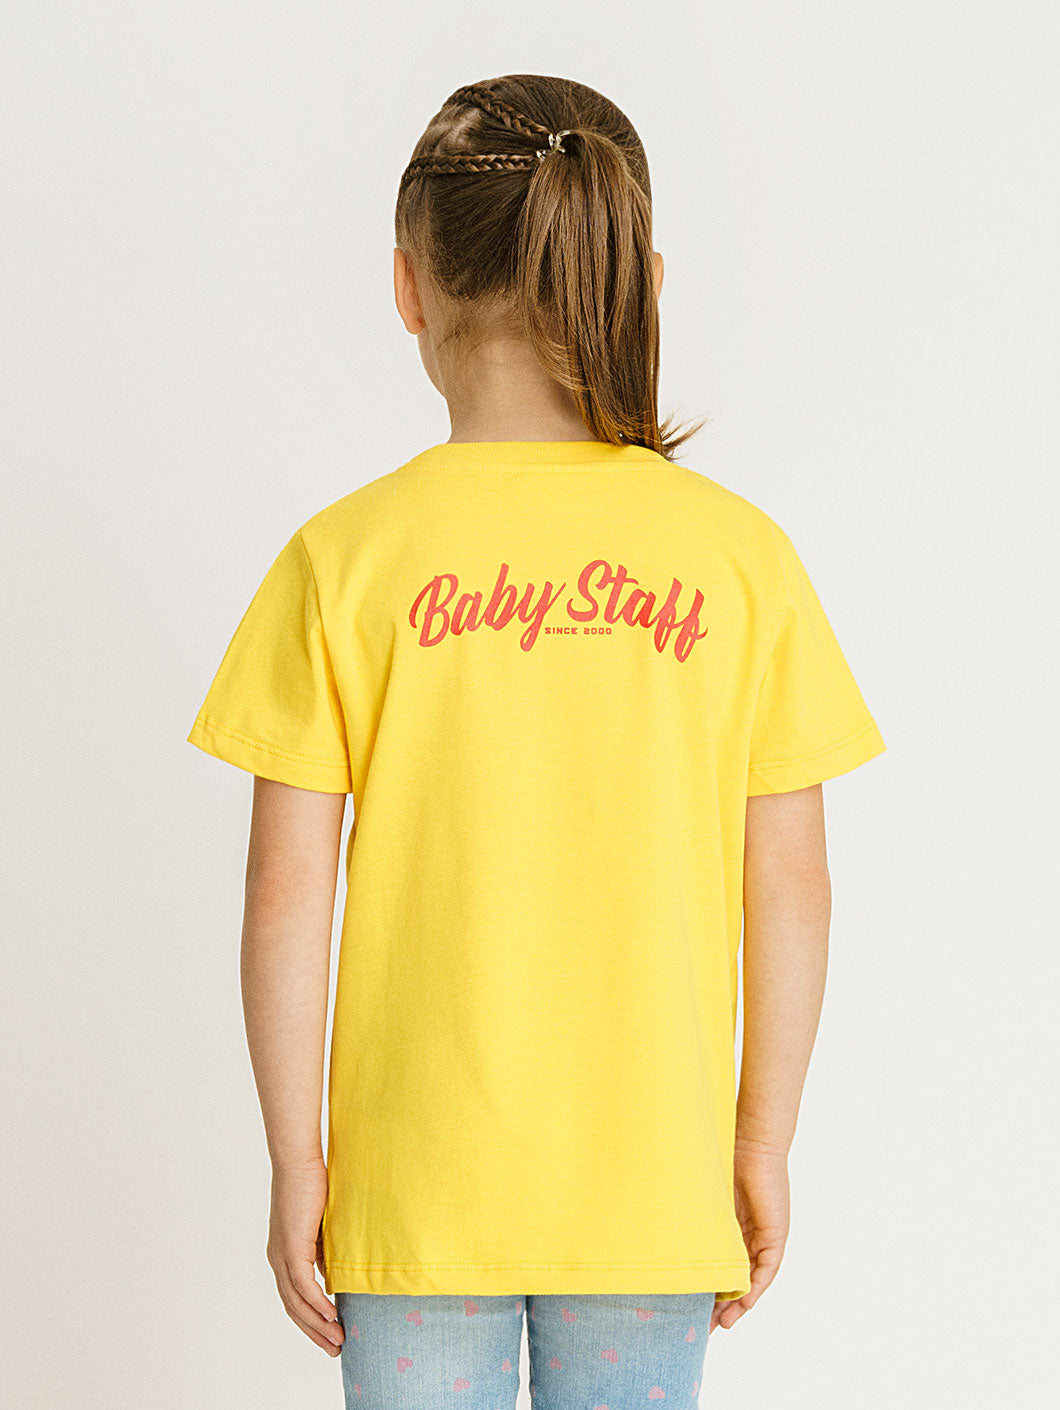 Babystaff Kids Logo T-Shirt gelb - 1